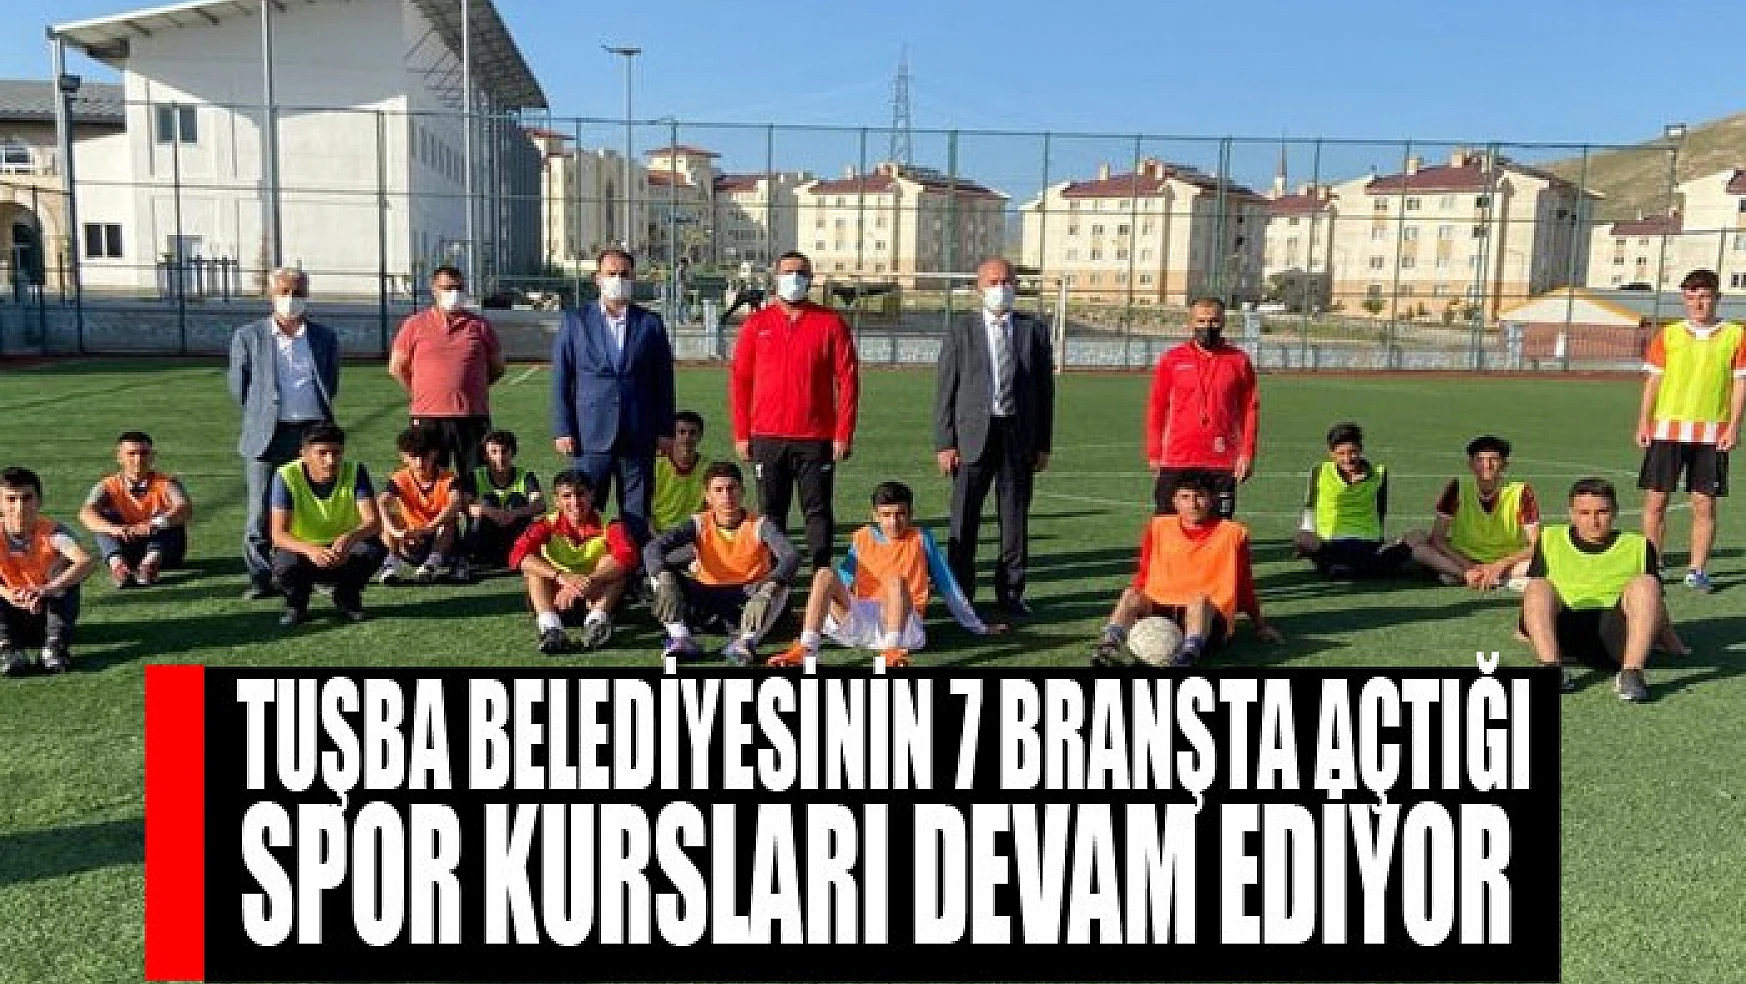 Tuşba Belediyesinin 7 branşta açtığı spor kursları devam ediyor